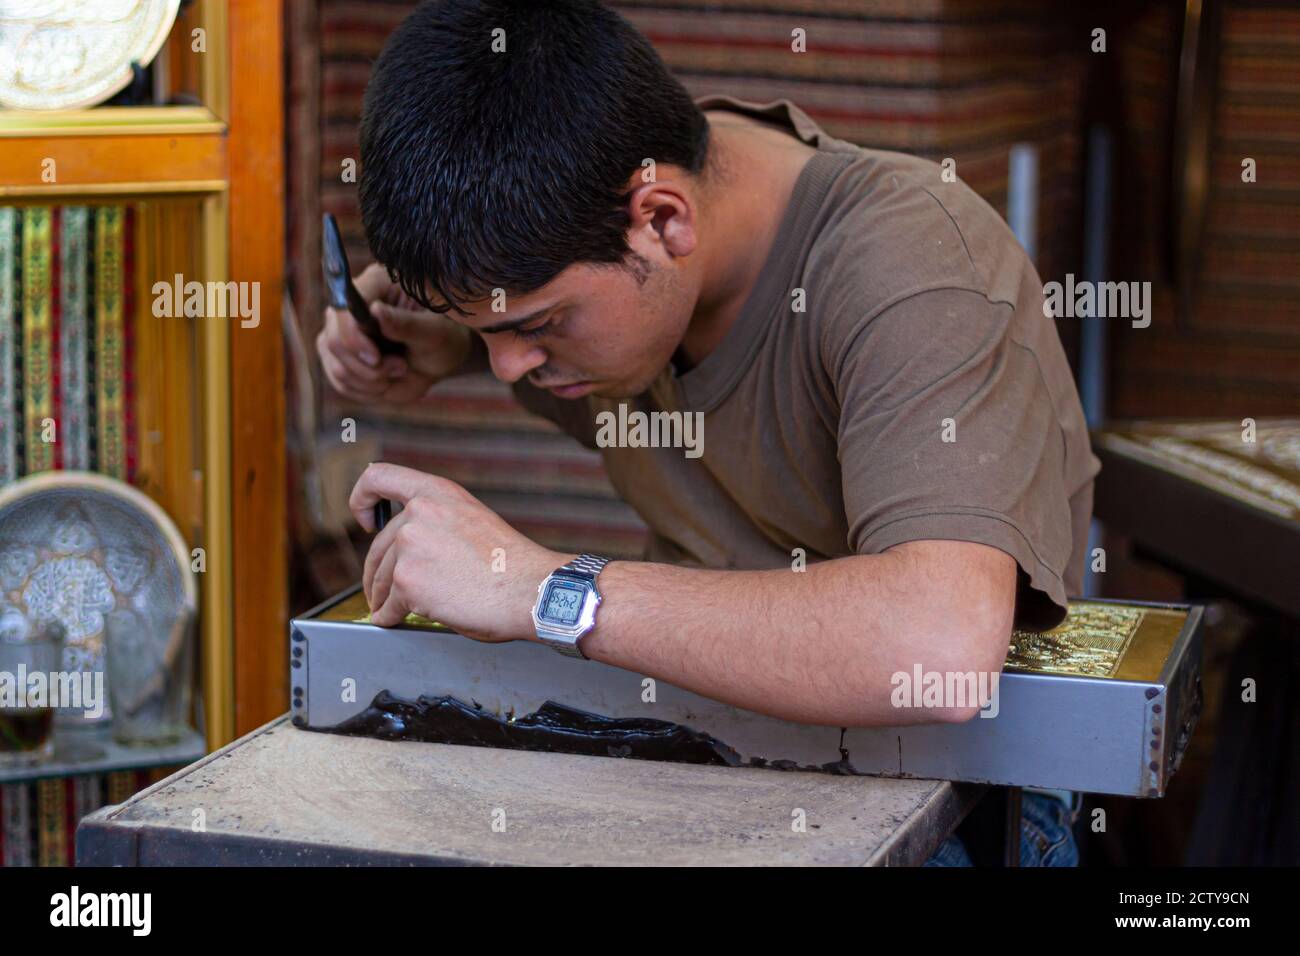 Damasco ,Siria 03/27/2010: Primo piano immagine di un giovane artista al lavoro. Sta intagliando con cura una piastra di rame con decorazioni tradizionali usando un martello Foto Stock